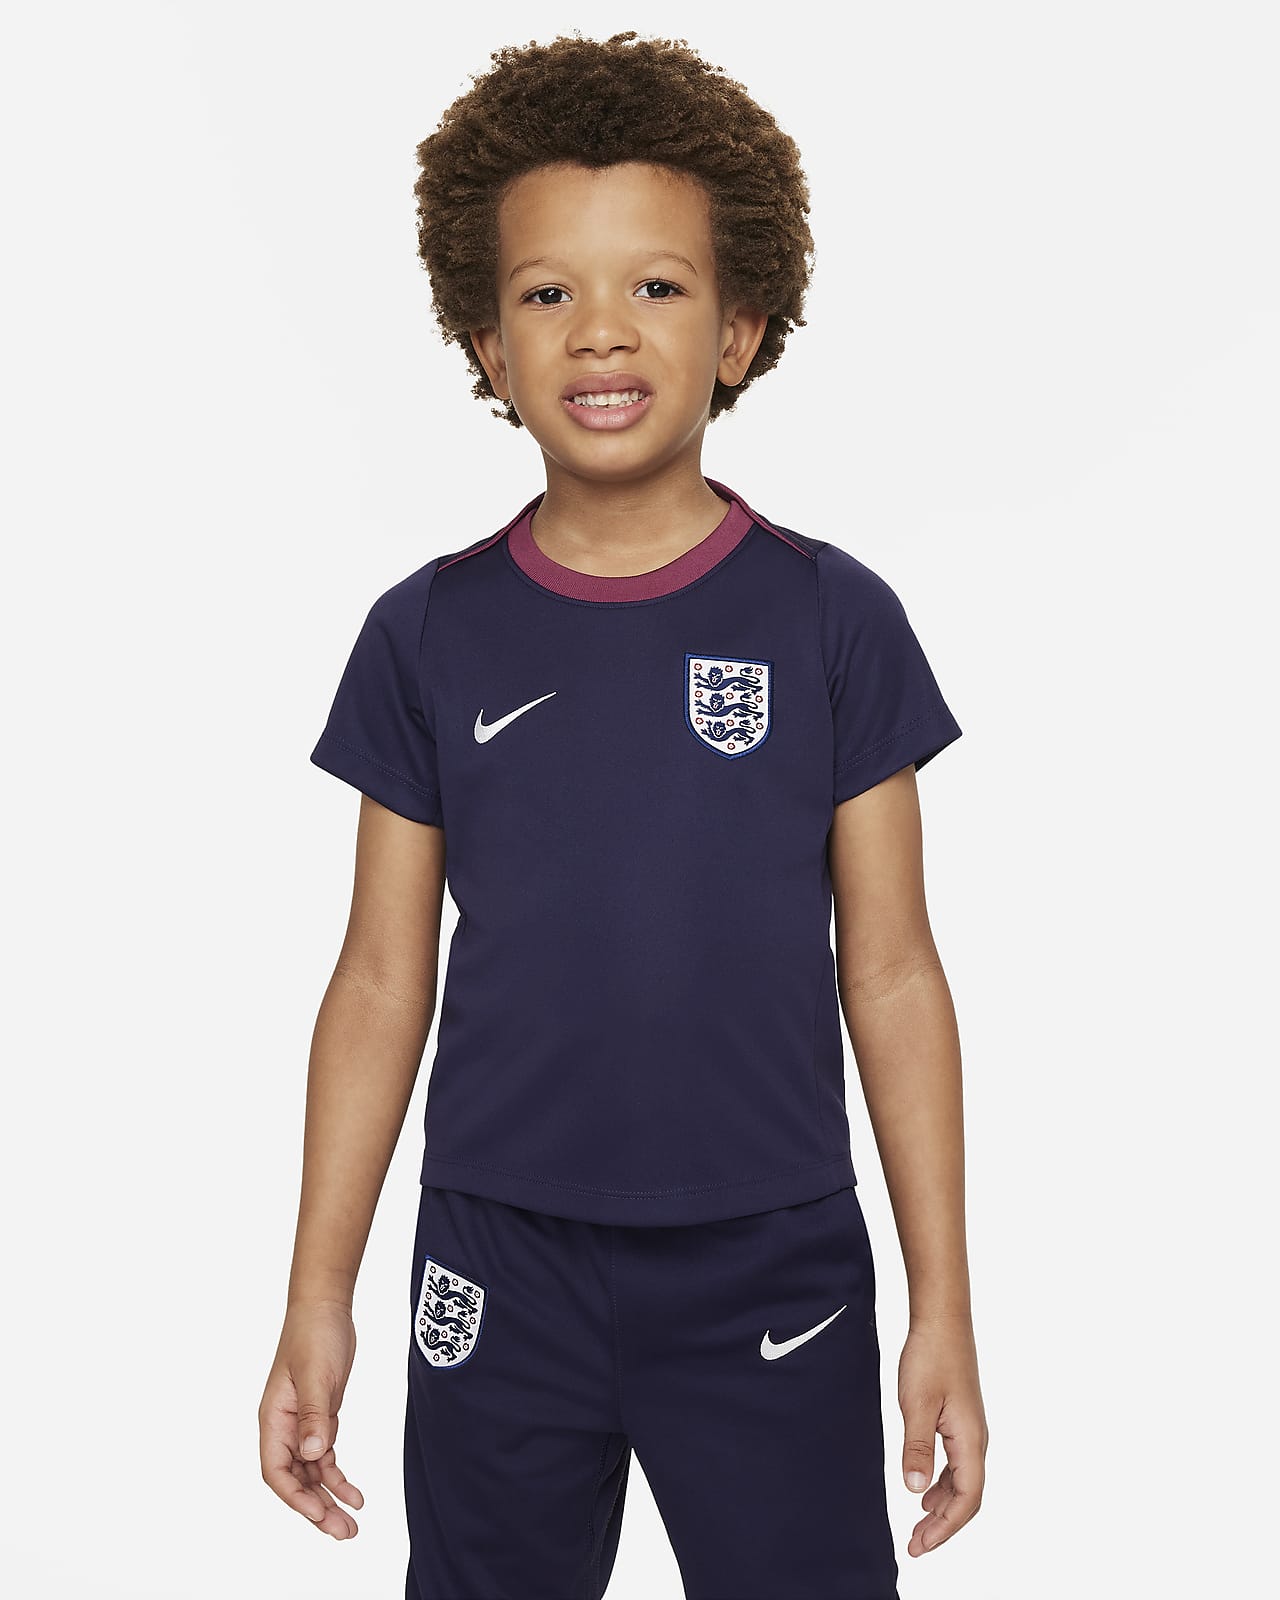 Engeland Academy Pro Nike Dri-FIT voetbaltop met korte mouwen voor kleuters